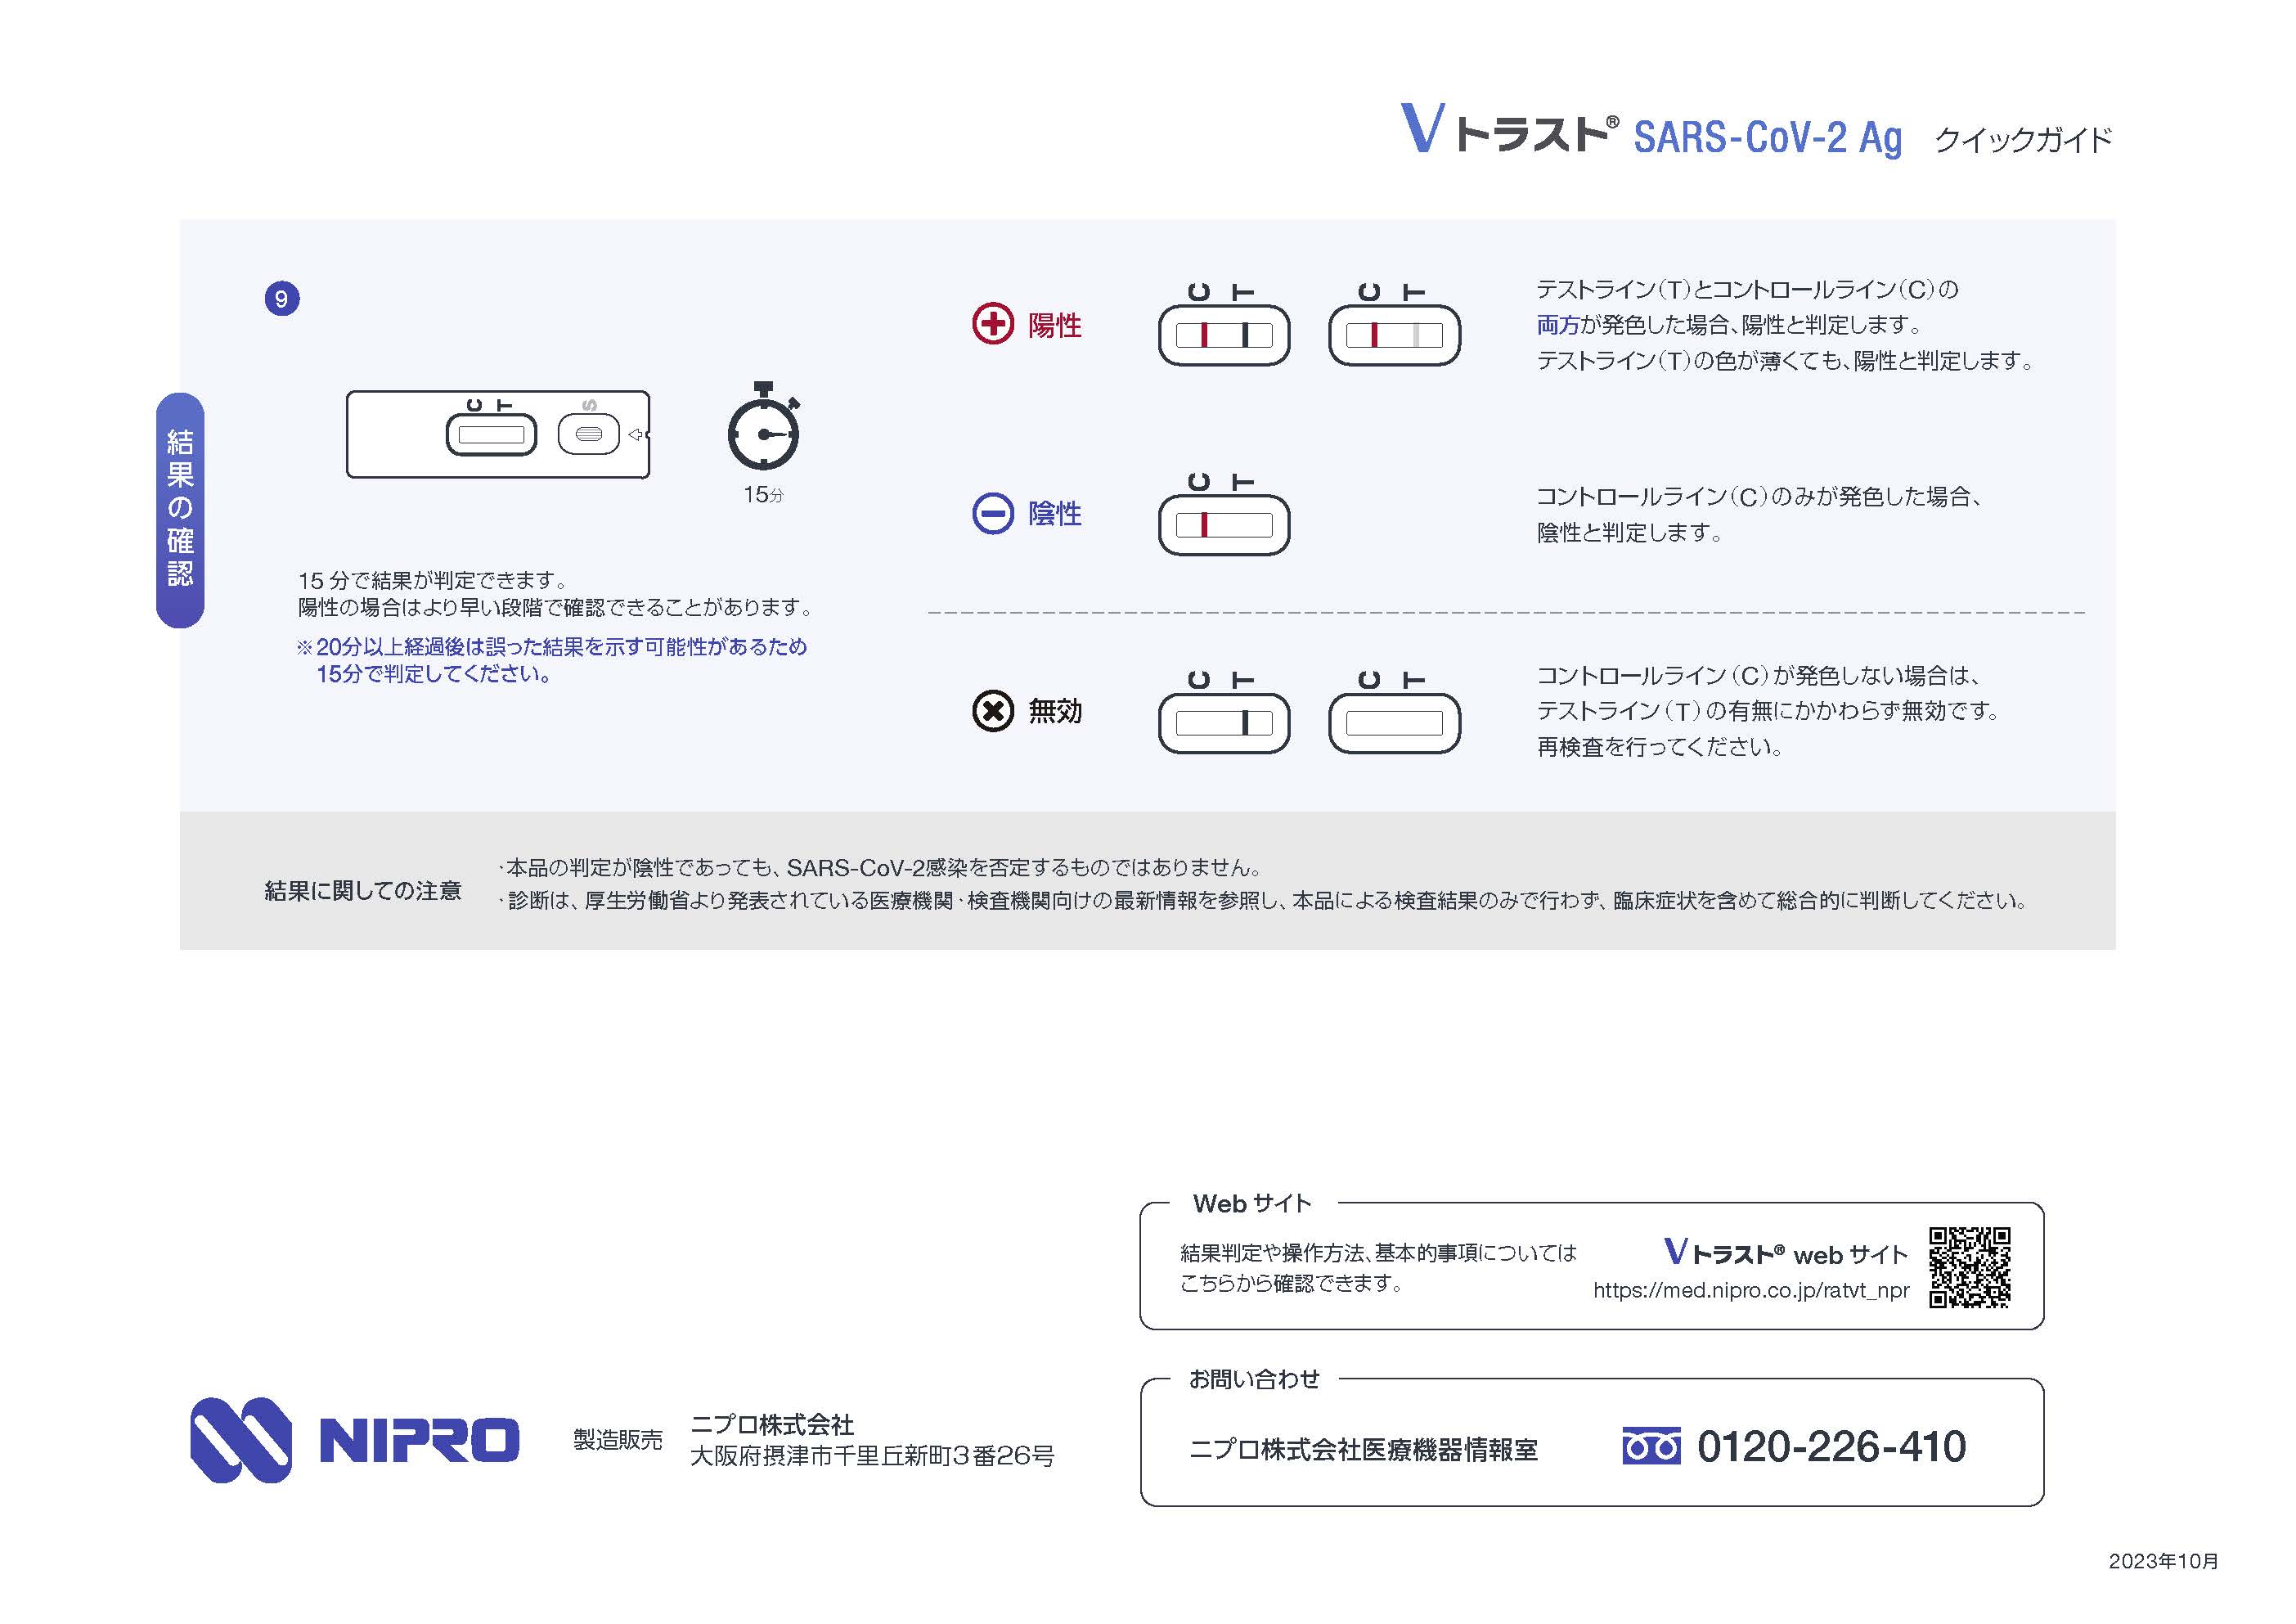 [ no. 1 вид фармацевтический препарат ] Nipro V Trust SARS CoV 2Ag( общий )1 раз для / COVID-19 Corona u il s.. инспекция комплект 